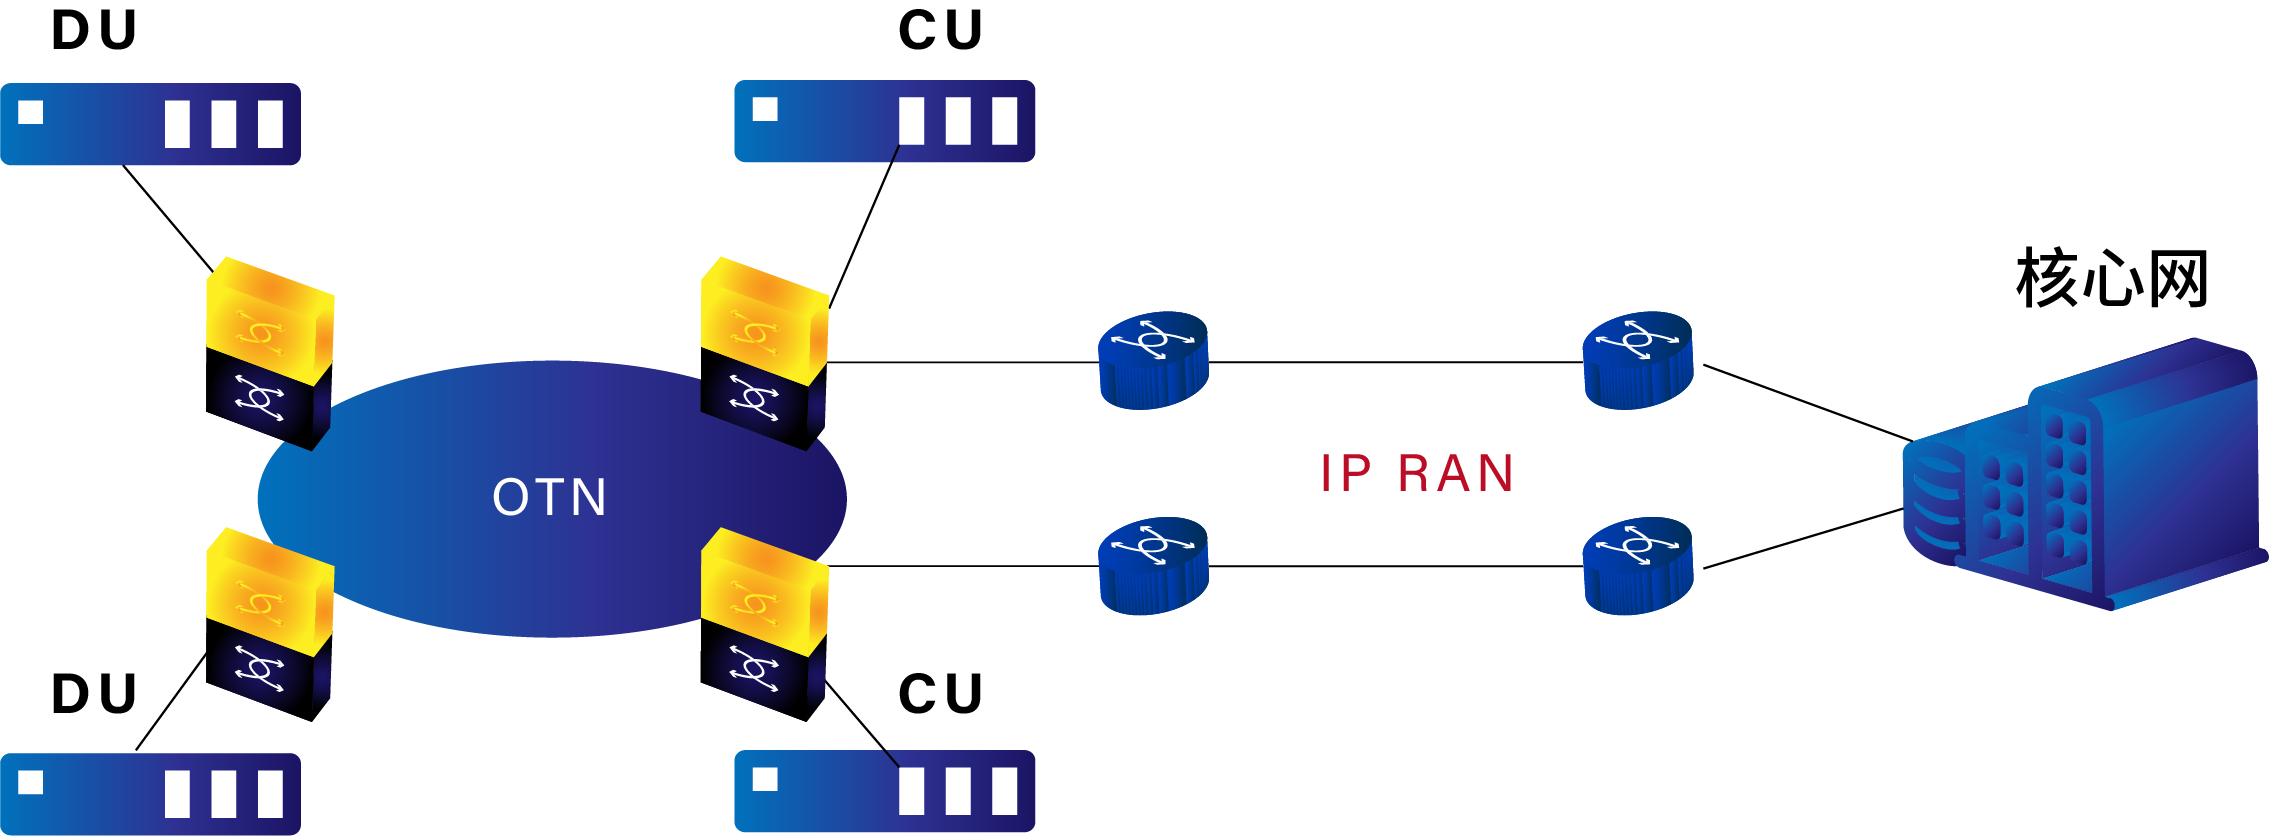 分组增强型 OTN+IPRAN 方案